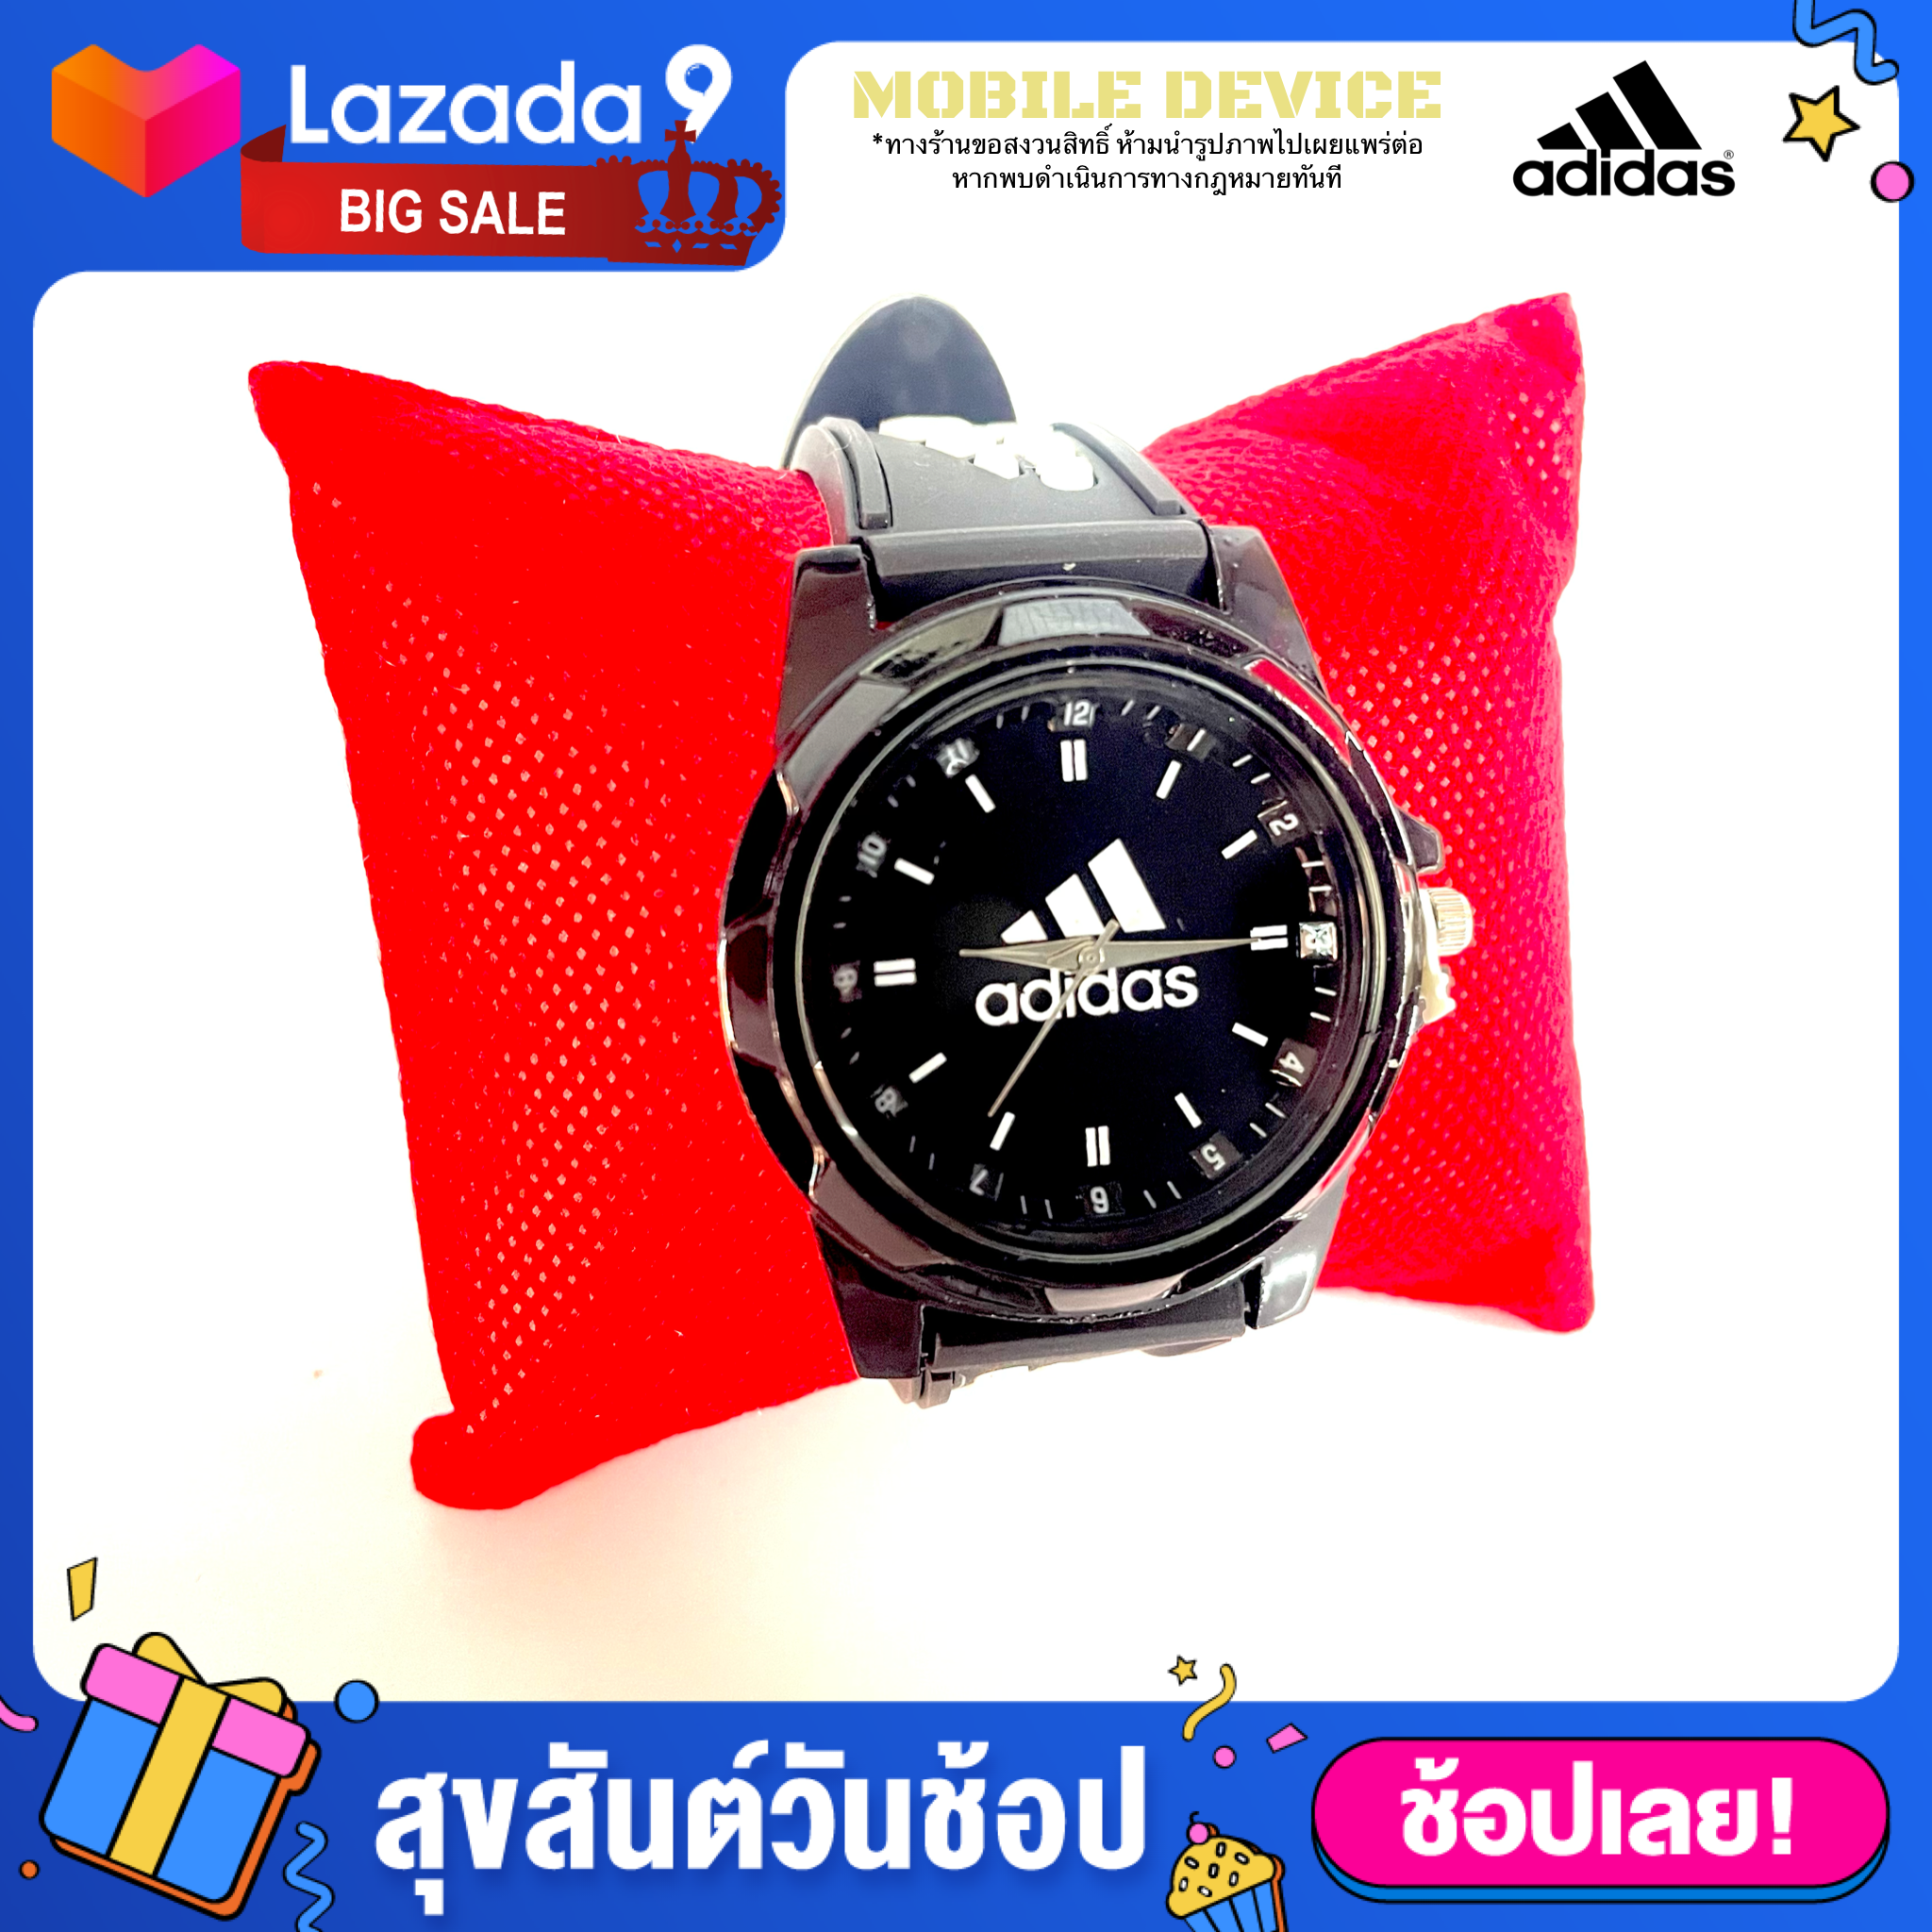 ภาพที่ให้รายละเอียดเกี่ยวกับ นาฬิกาข้อมือแฟชั่น สายพลาสติก สินค้าพร้อมส่งจากไทย